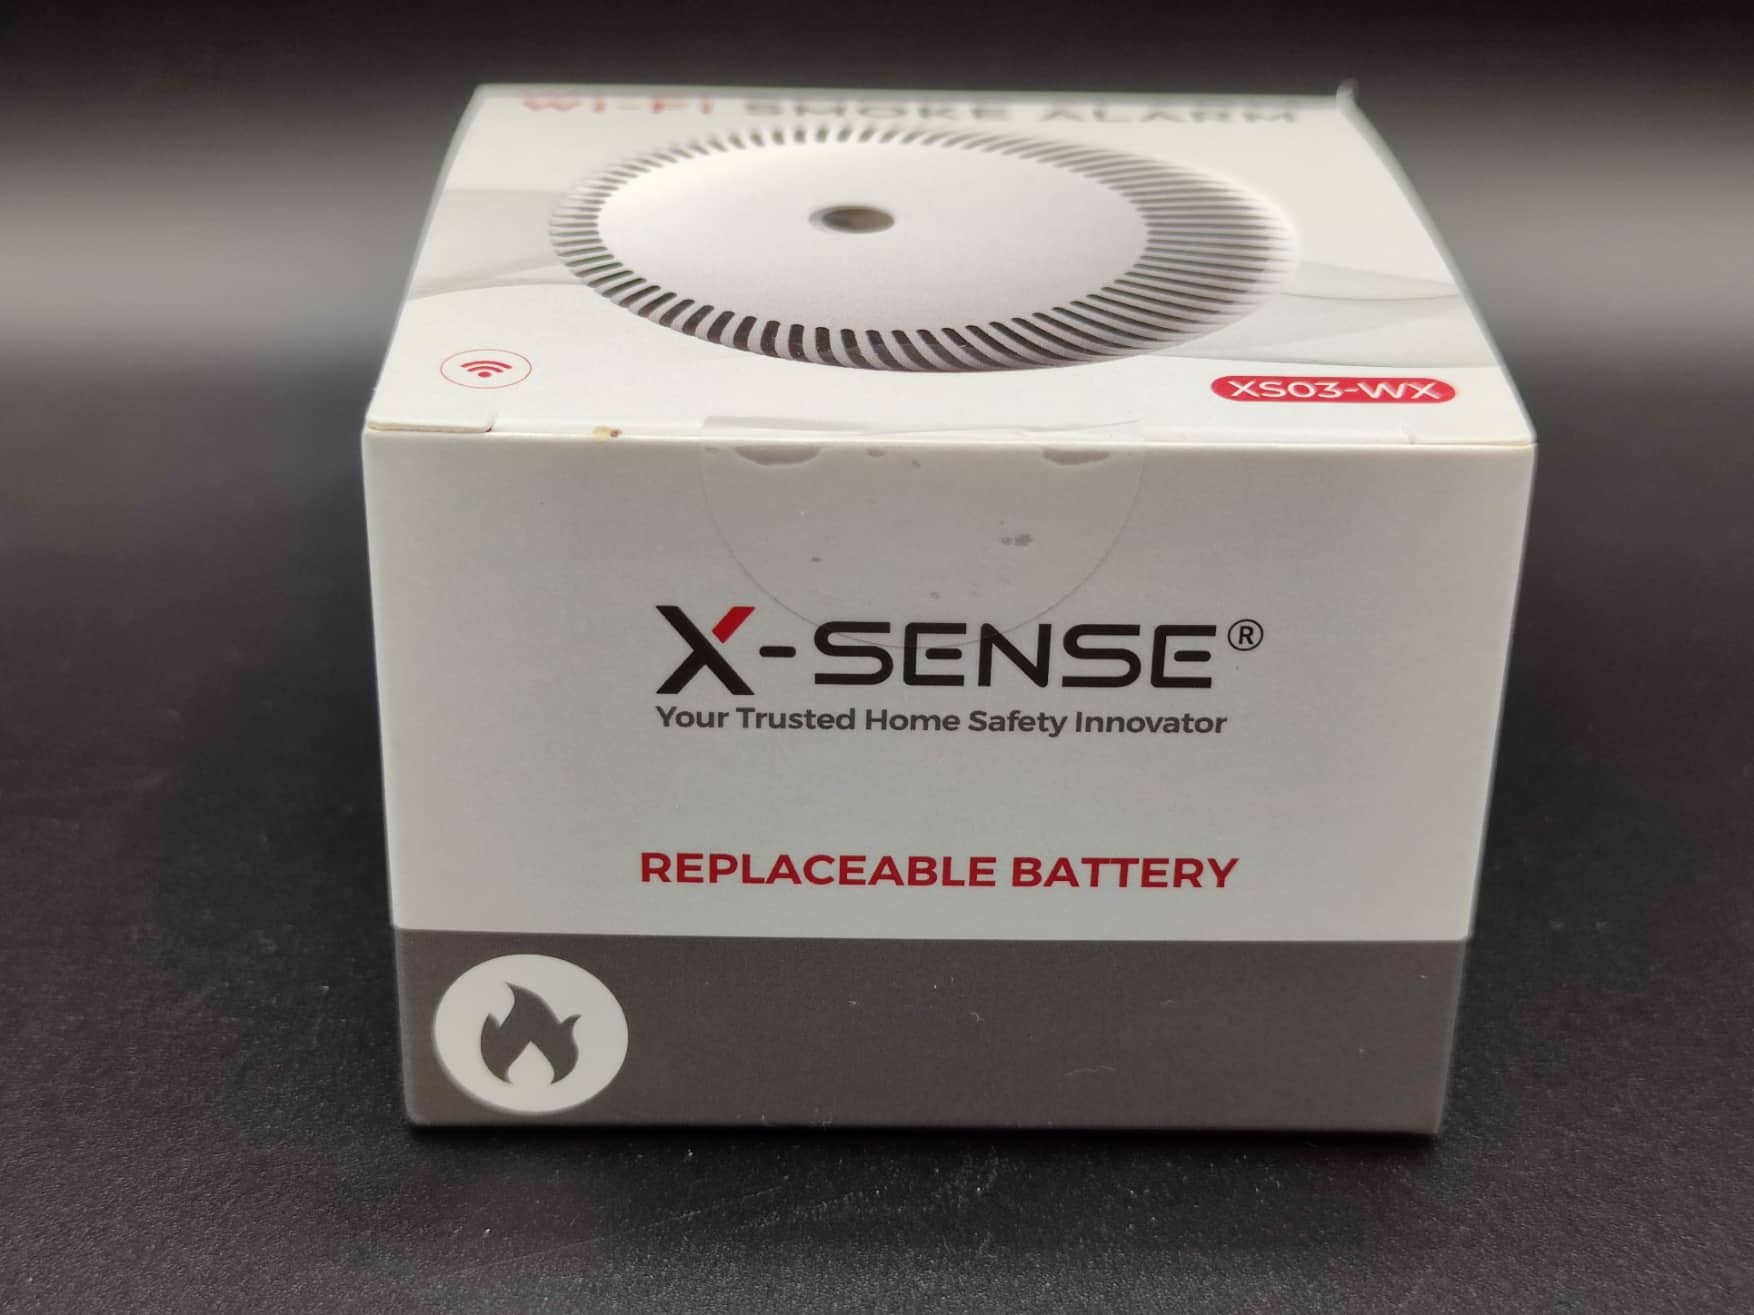 Test X-Sense XS03-WX : un détecteur de fumée Wi-Fi – Les Alexiens